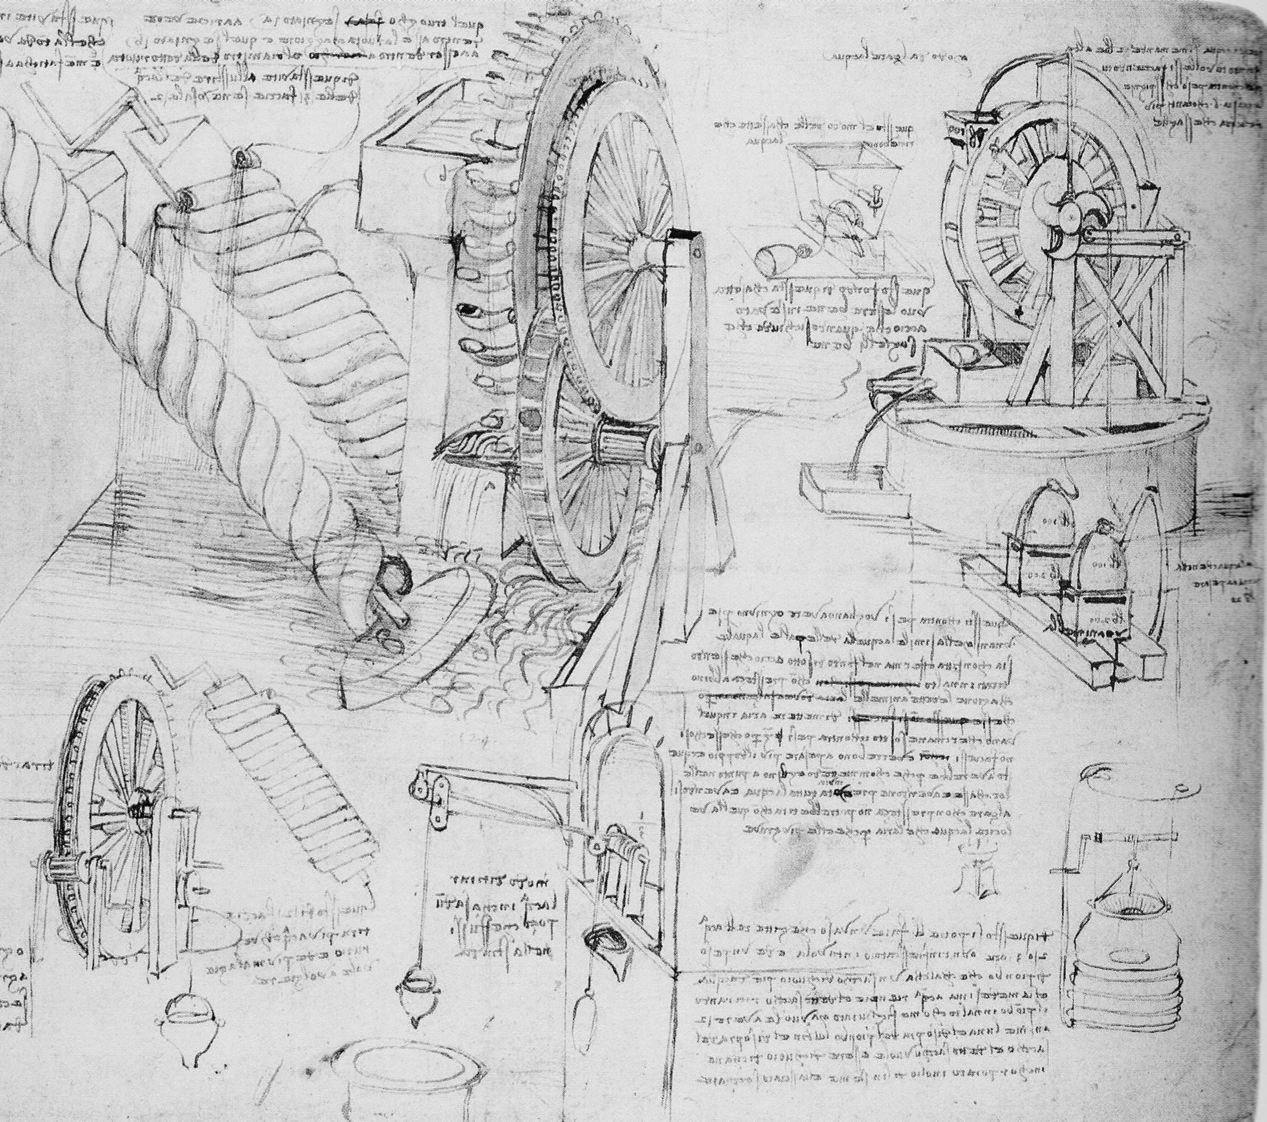 Digitale Bibliothek Braunschweig Zur Modellierung und Simulation von Turbulenz 109 Abb. 2: Leonardo Da Vinci Entwurf einer Wasserhebeeinrichtung, 1480.